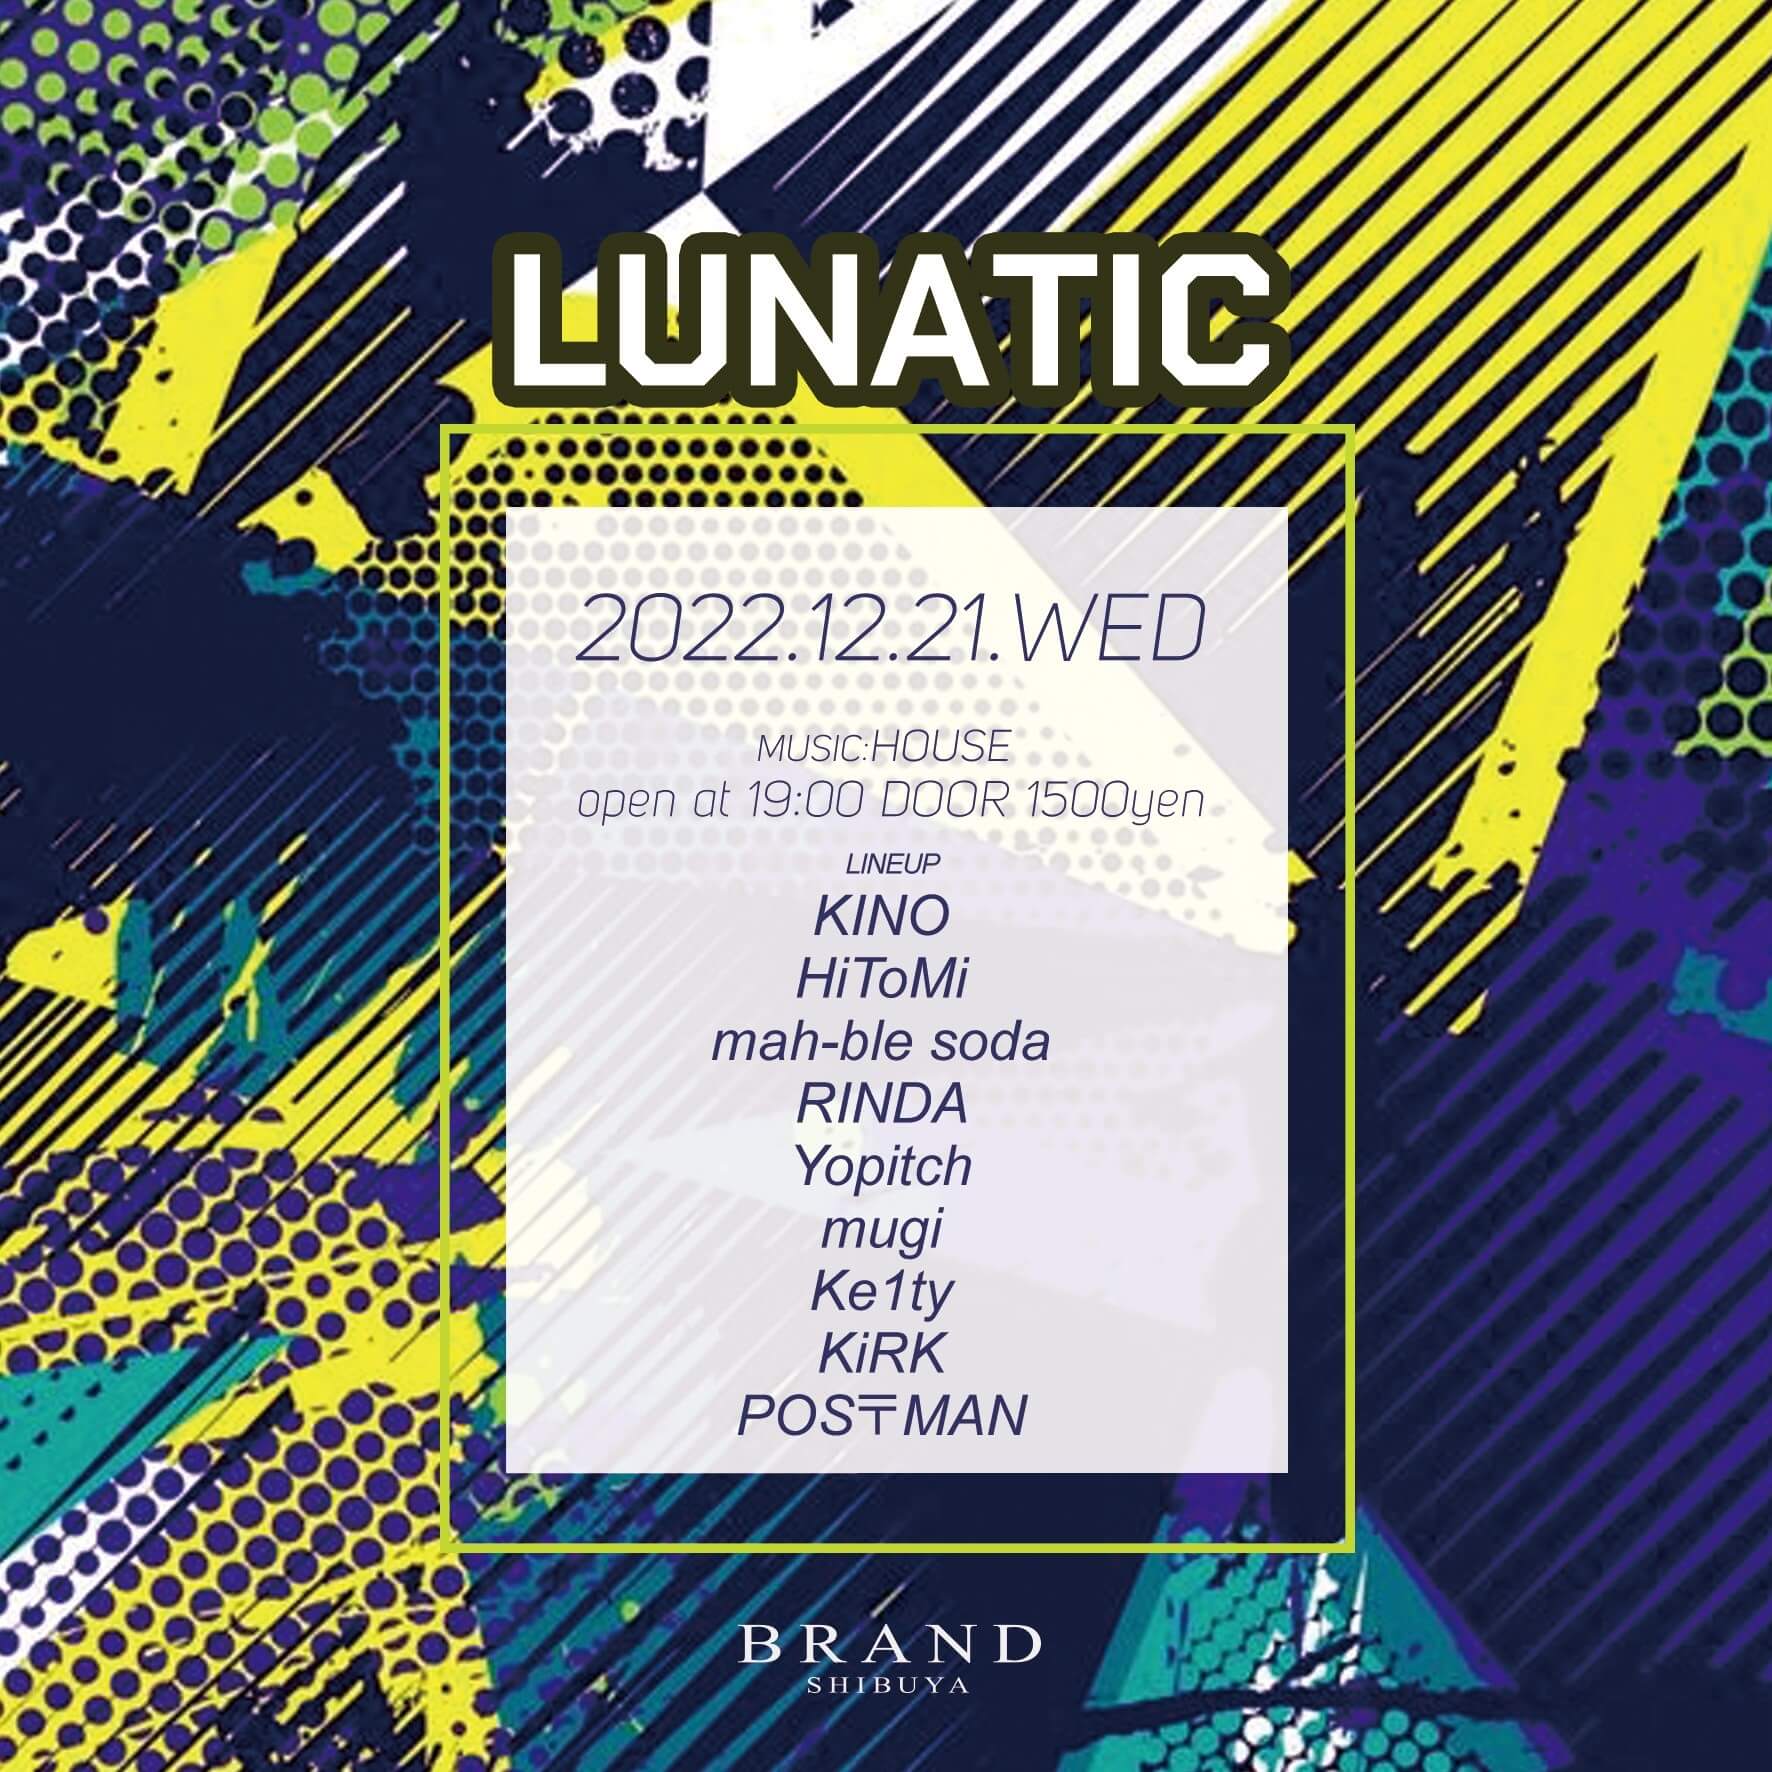 LUNATIC 2022年12月21日（水曜日）に渋谷 クラブのBRAND SHIBUYAで開催されるHOUSEイベント